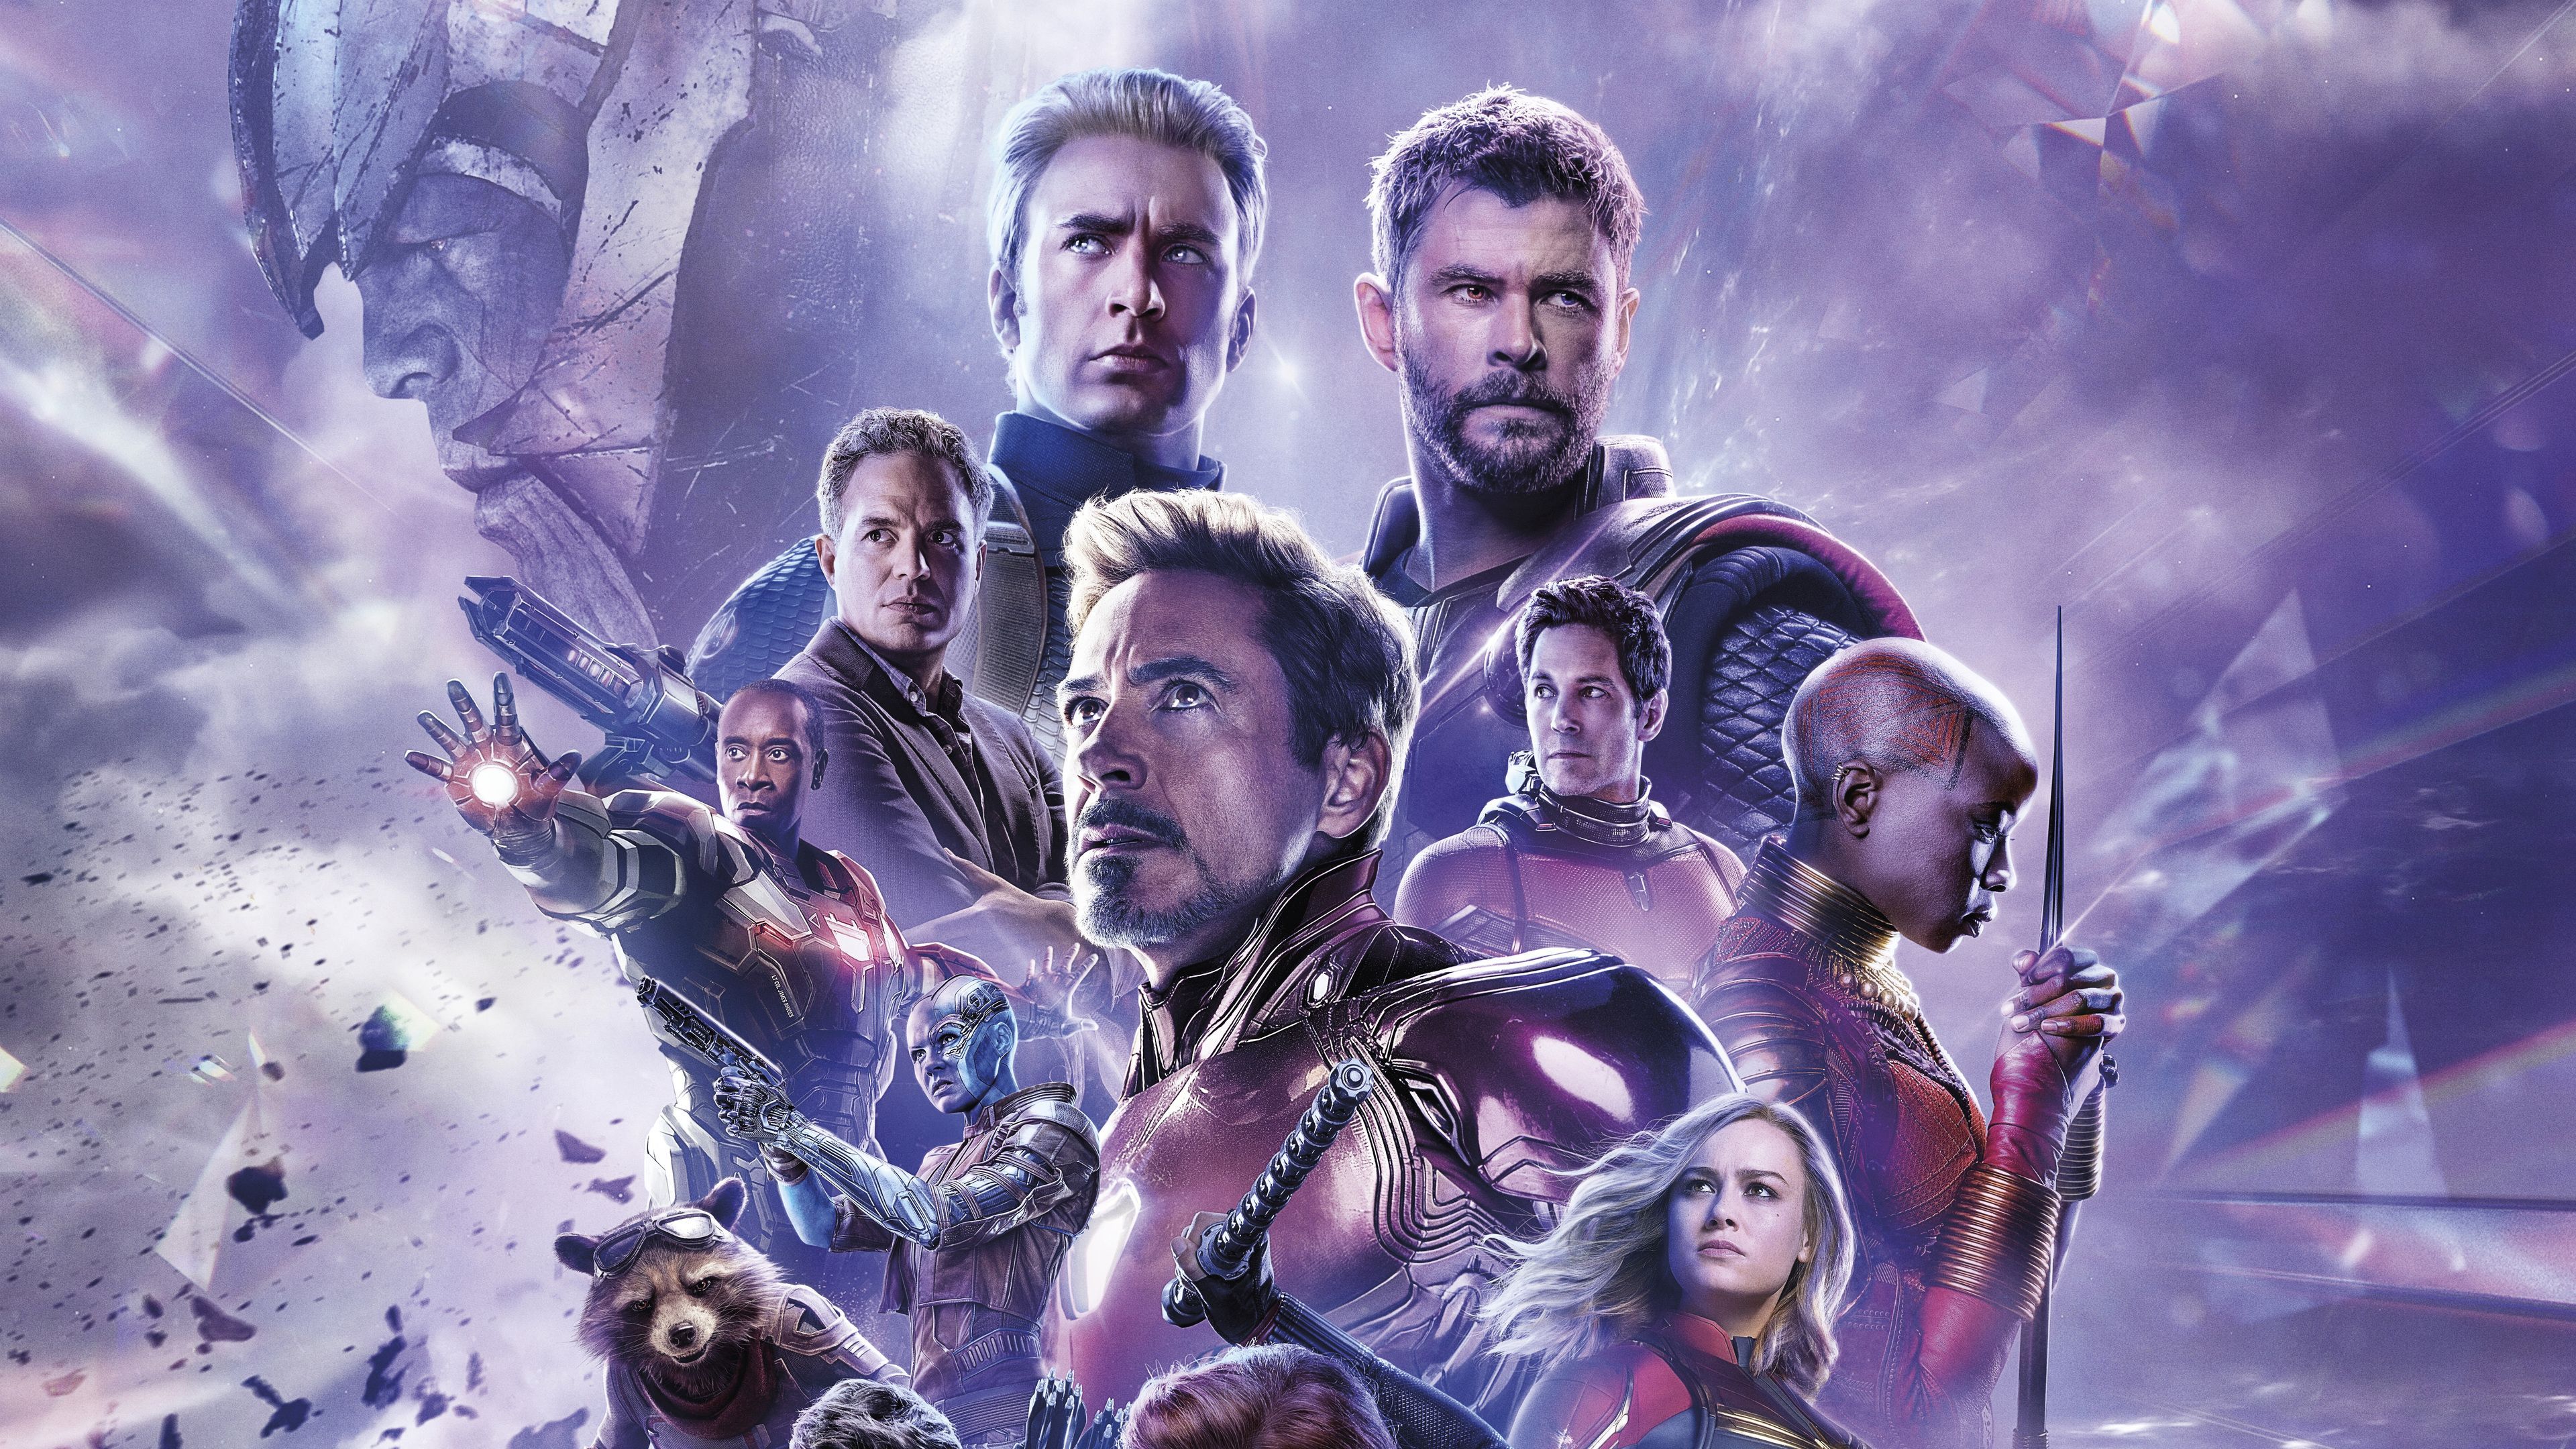 Avengers Endgame, Desktop, HD Wallpapers: Sở hữu một bộ sưu tập Desktop HD Wallpapers của Avenger Endgame là cách tuyệt vời để chiêm ngưỡng lại những khoảnh khắc kinh điển trong bộ phim hấp dẫn này. Hãy tải về và trang trí máy tính của bạn với những hình ảnh đầy sống động và ký ức đáng nhớ.